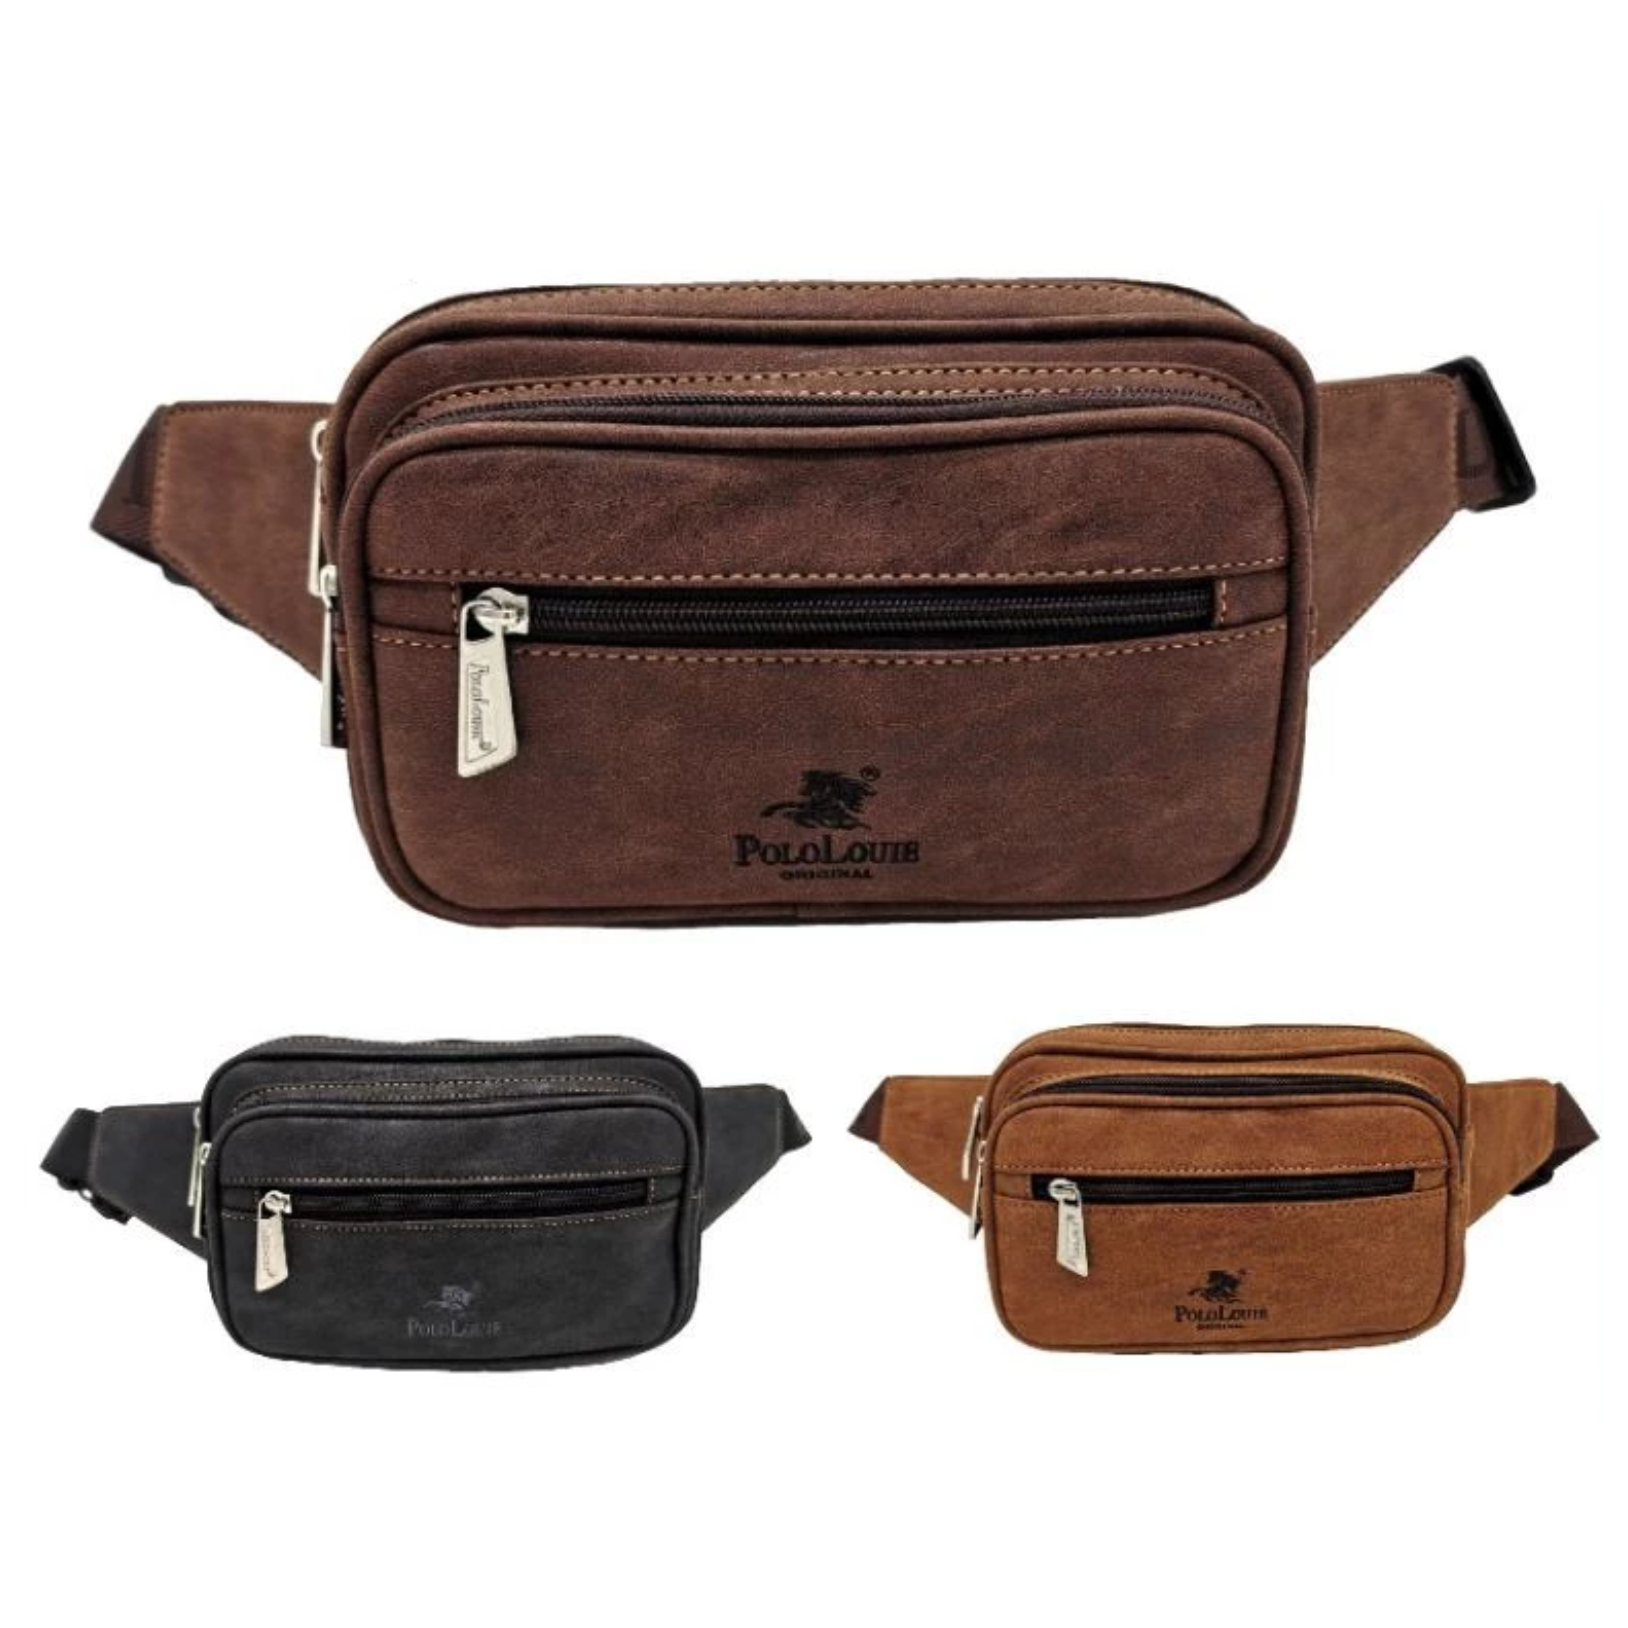 Original Polo Louie Men Leather Clutch Bag Monogram Shoulder Sling Bag  Trending Beg Tangan Lelaki Premium Men Handbag